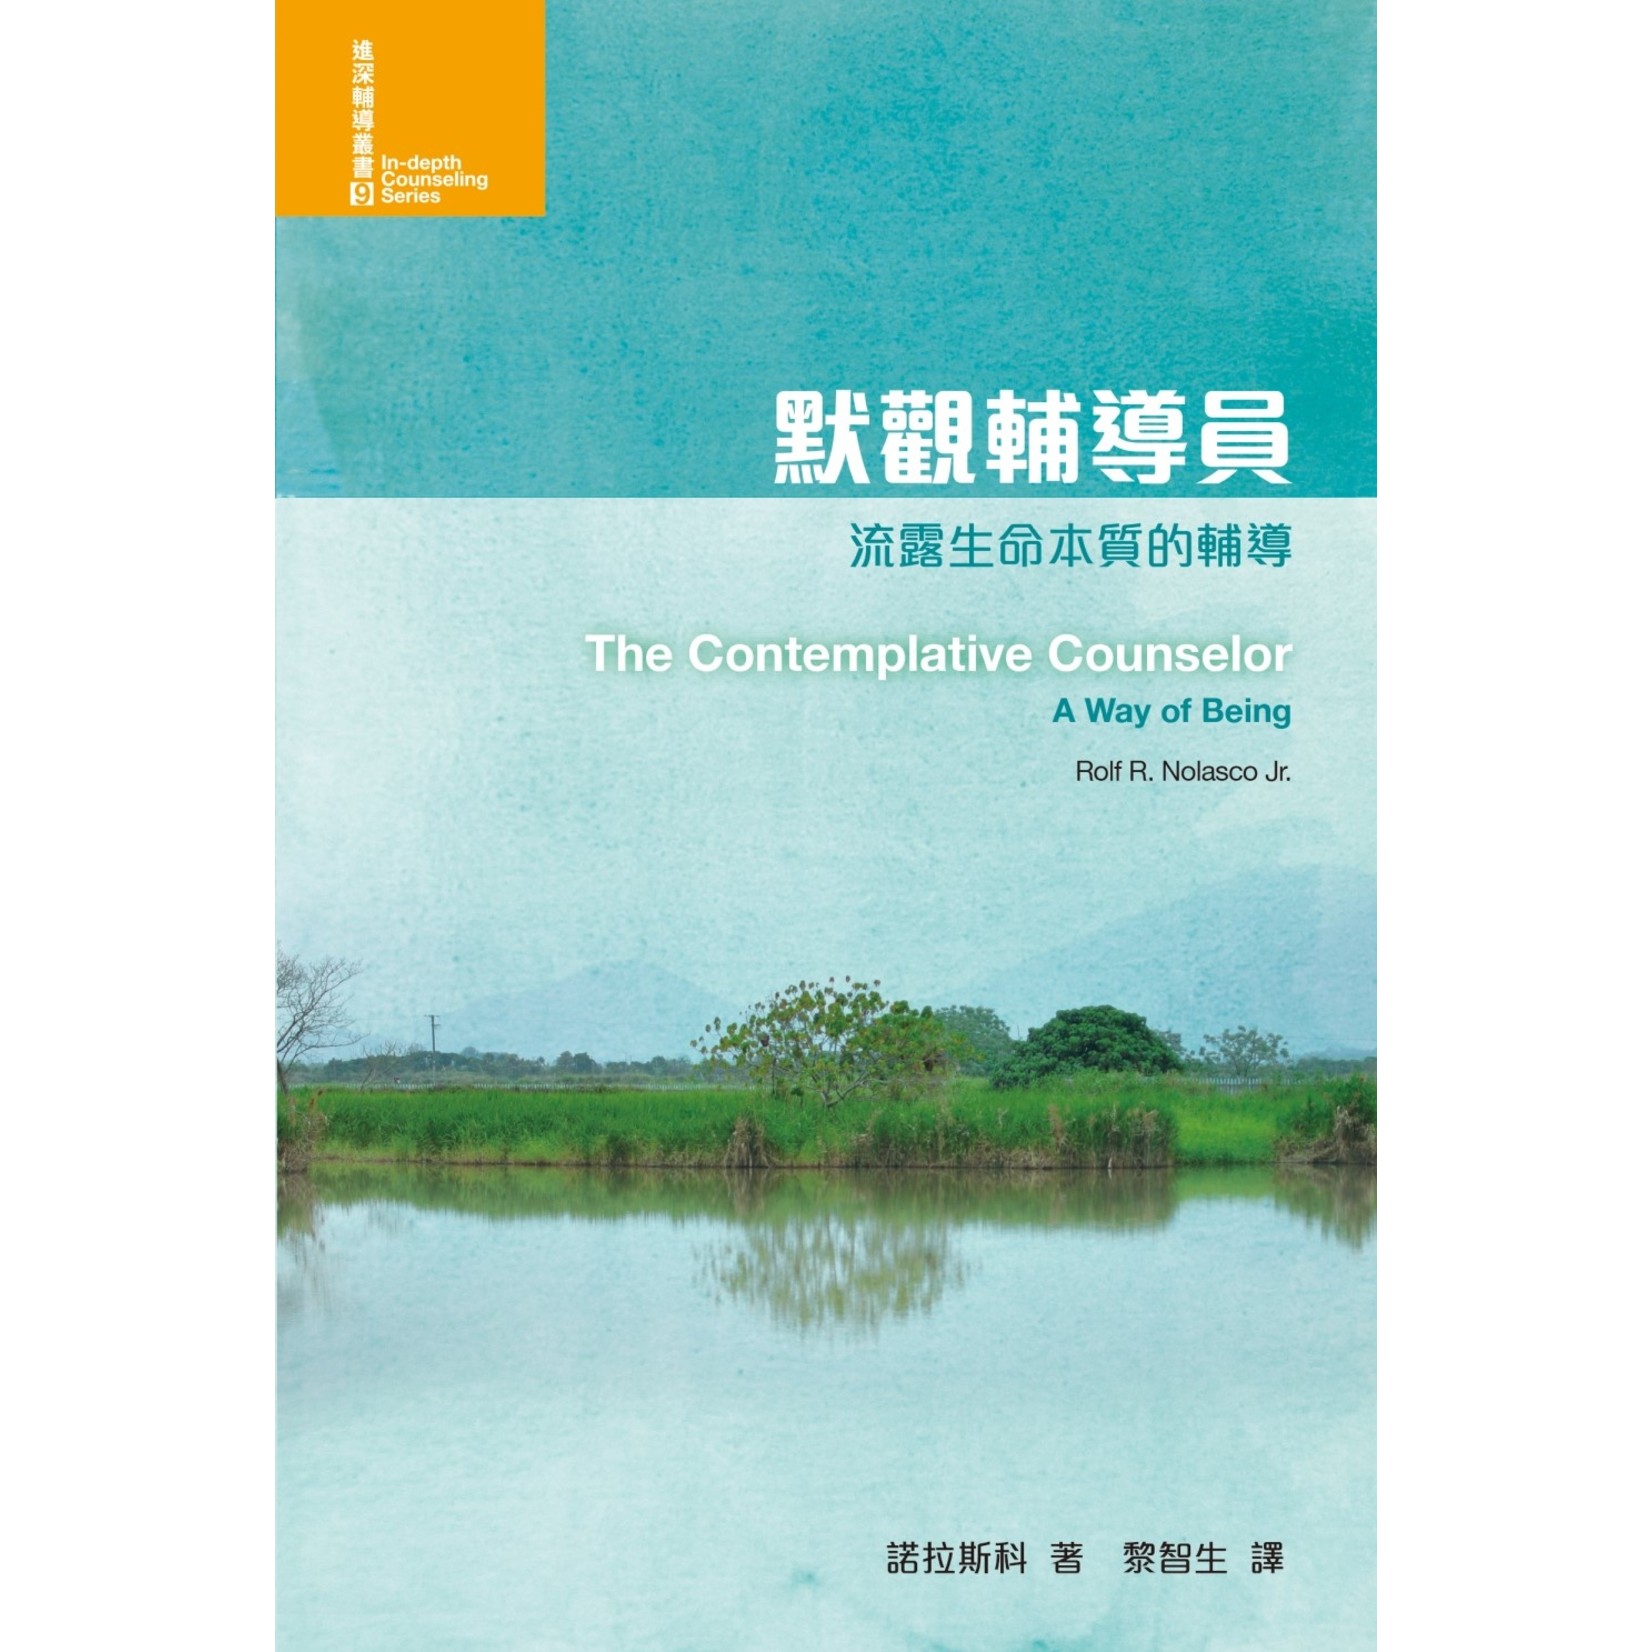 基督教文藝(香港) Chinese Christian Literature Council 默觀輔導員：流露生命本質的輔導 | The Contemplative Counselor: A Way of Being